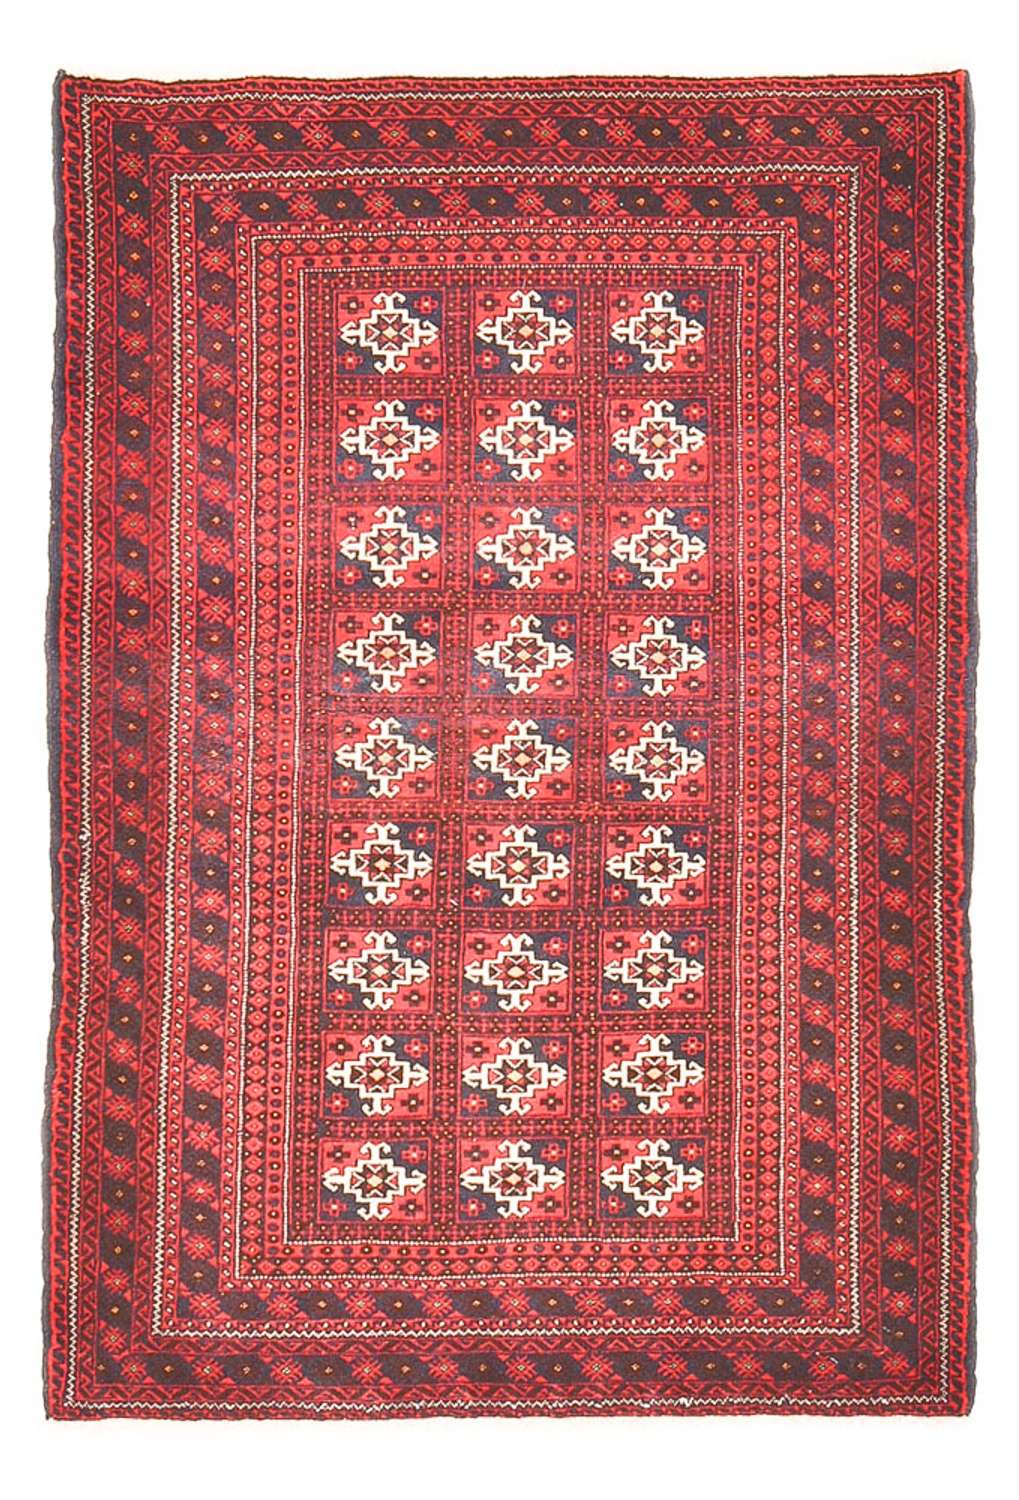 Tapis Belutsch - 150 x 100 cm - rouge